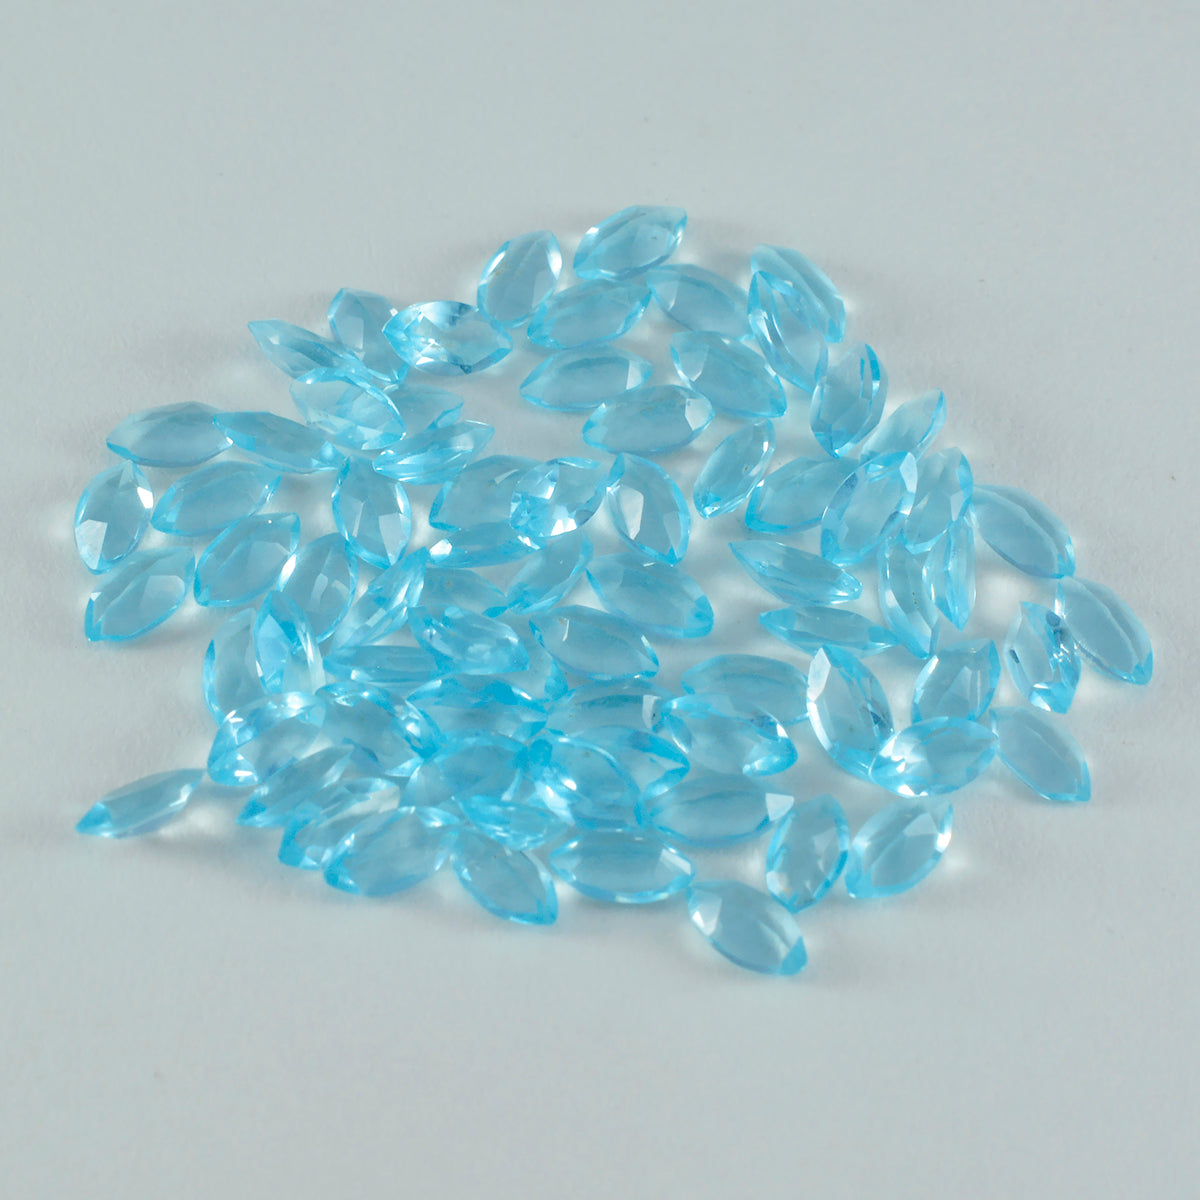 Riyogems 1 Stück blauer Topas, CZ, facettiert, 2,5 x 5 mm, Marquise-Form, süße Qualität, lose Edelsteine